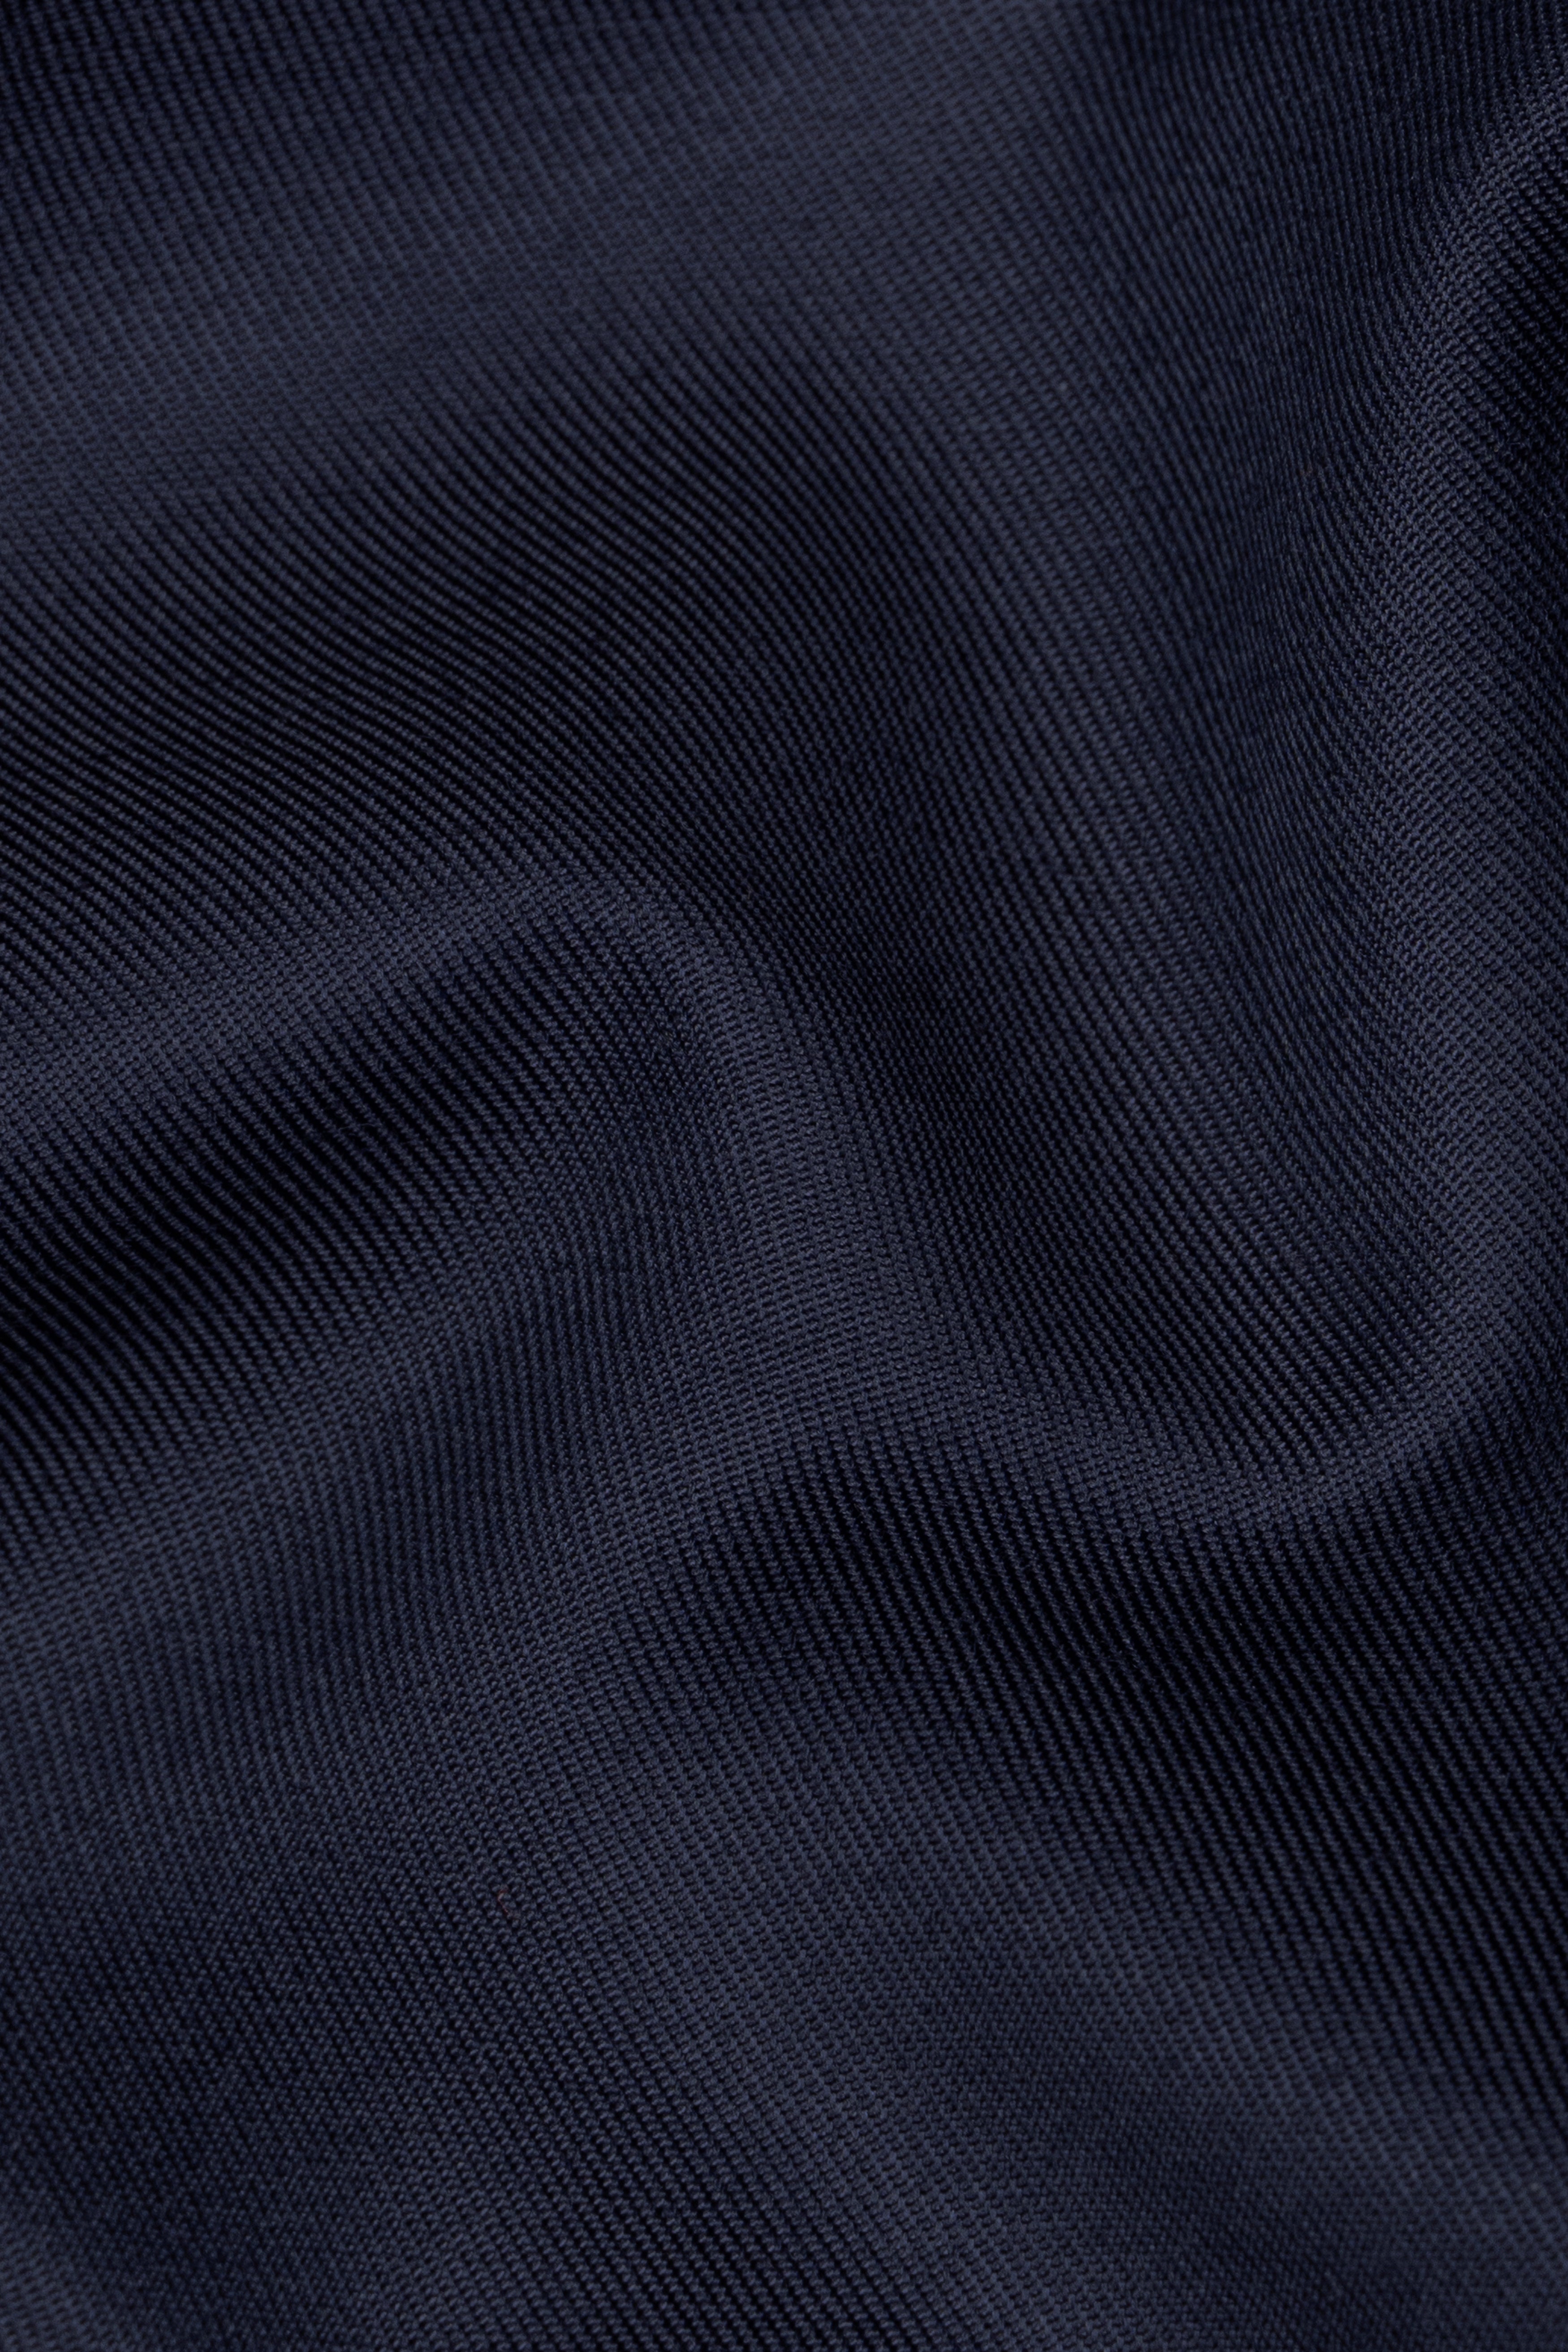 Vulcan Blue Plain Solid Wool Blend Blazer